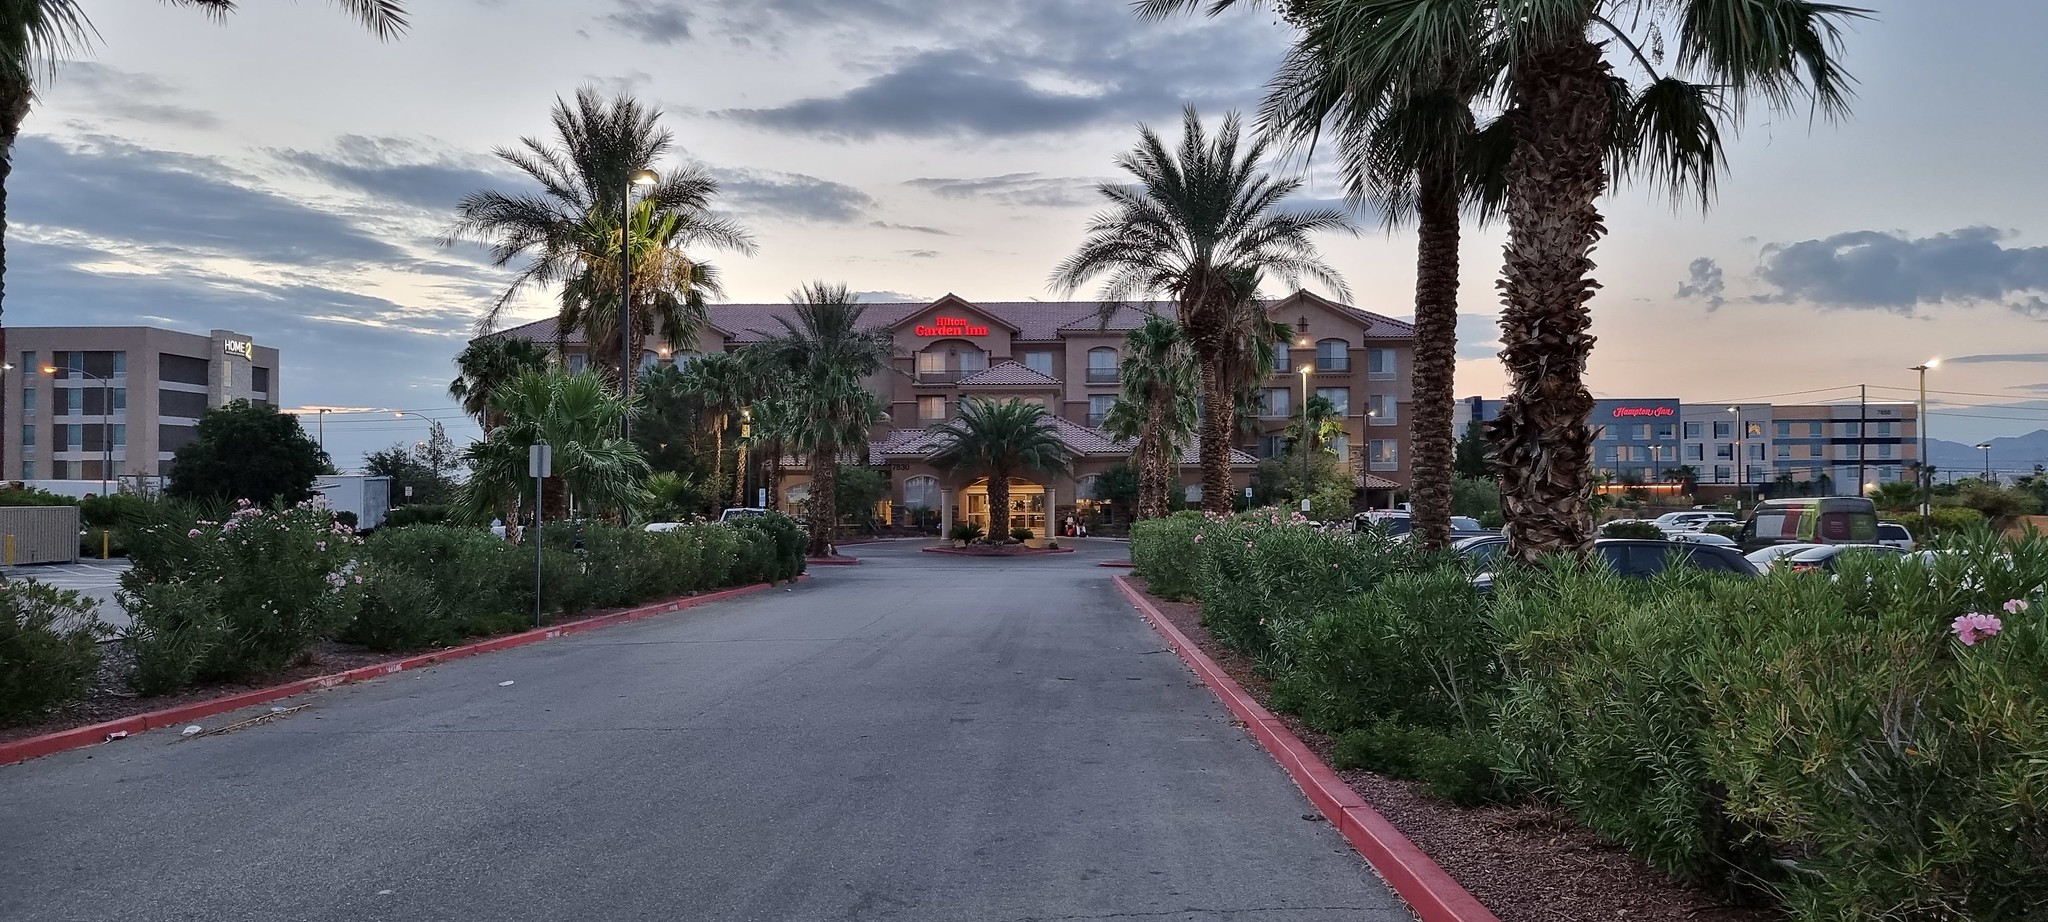 The Hilton Garden Inn in Las Vegas